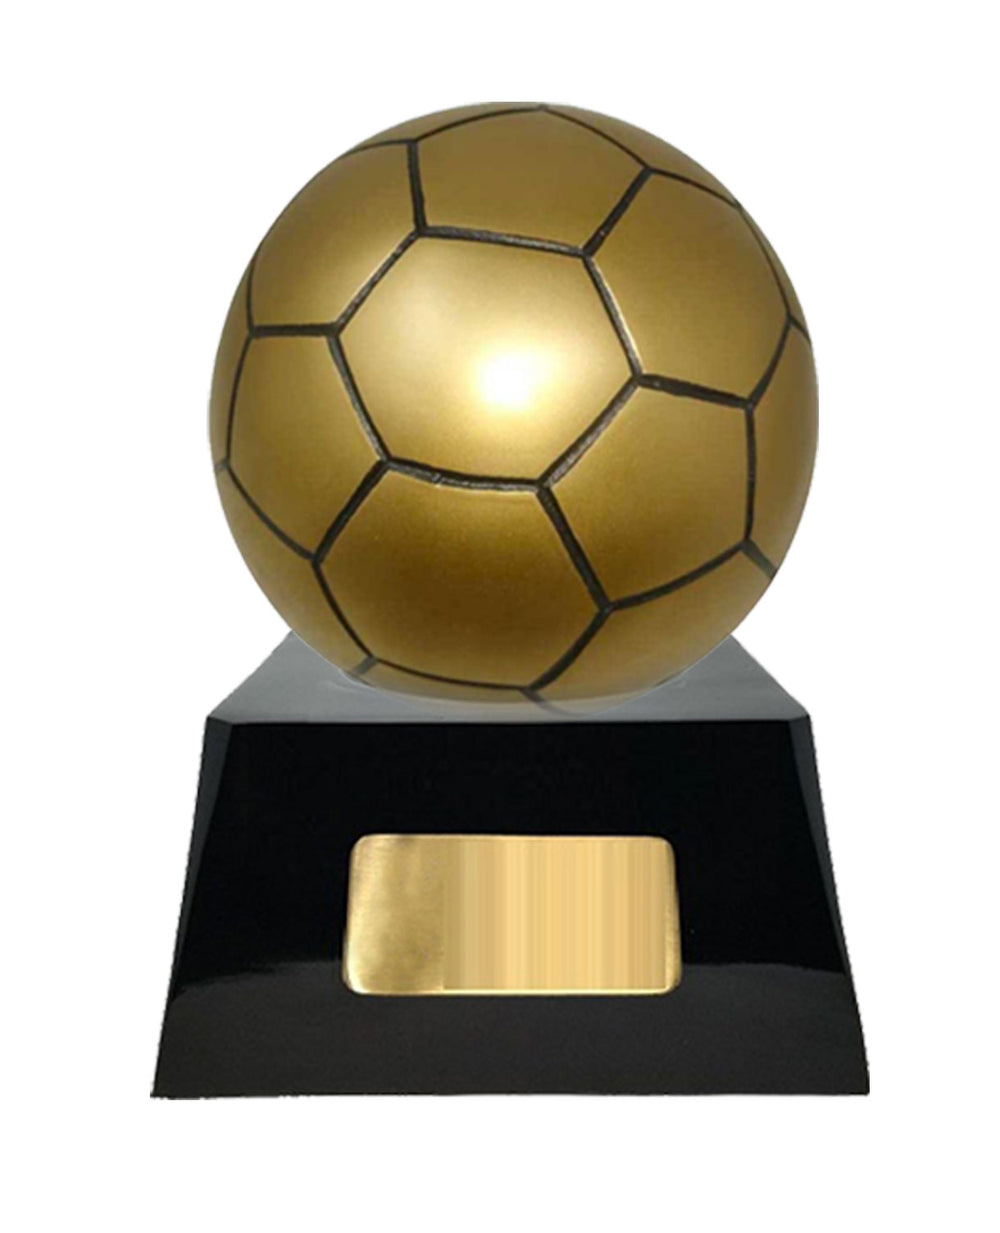 Sports Sculpture Series - Soccer Urn - IUSC119